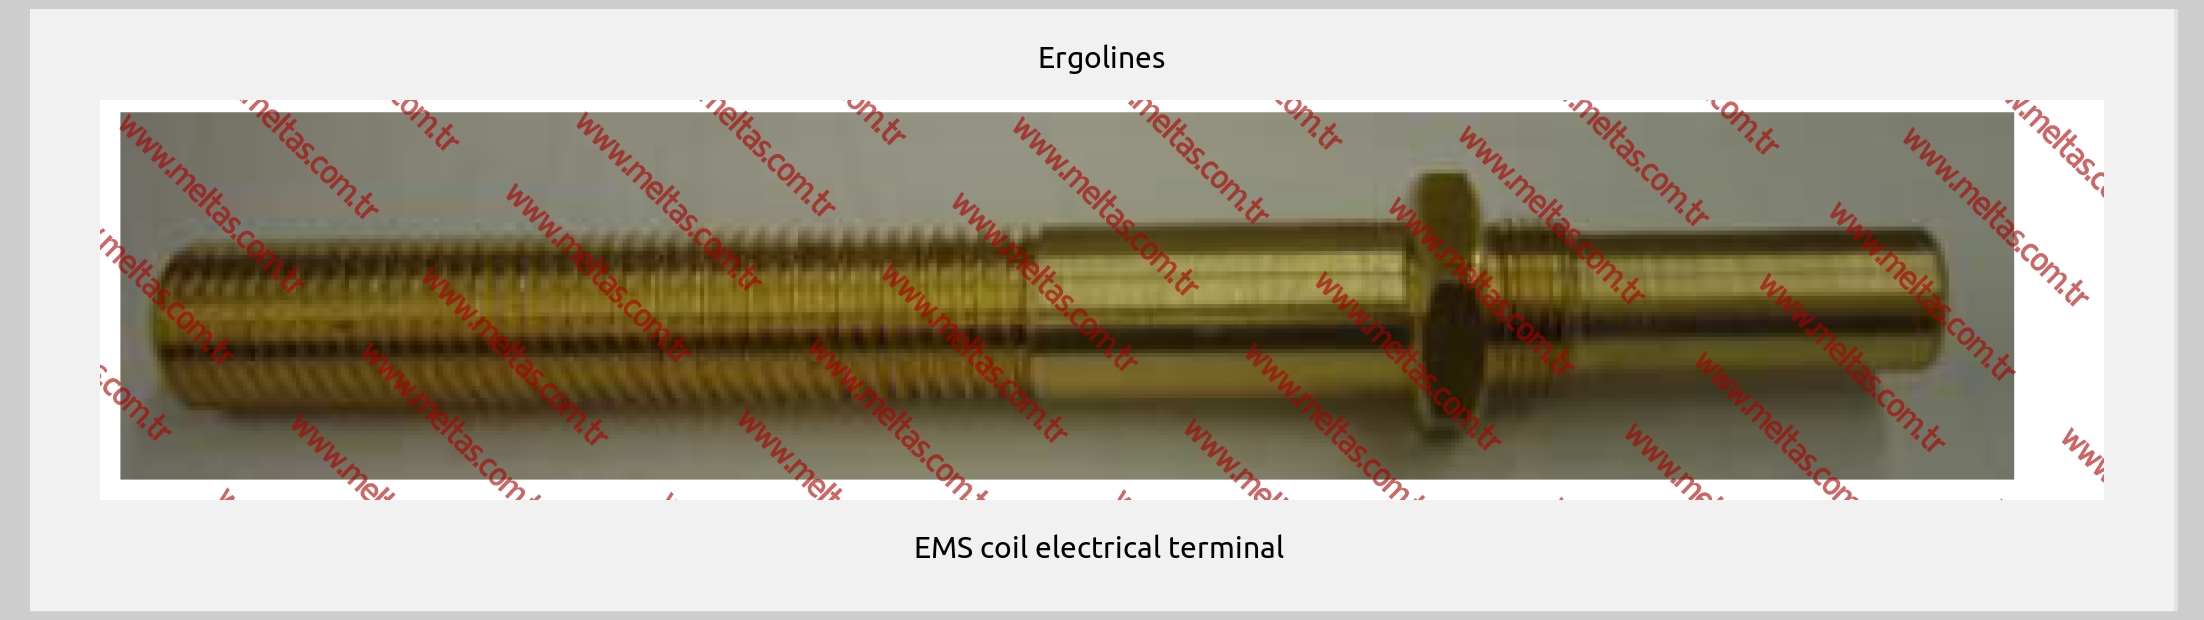 Ergolines-EMS coil electrical terminal 